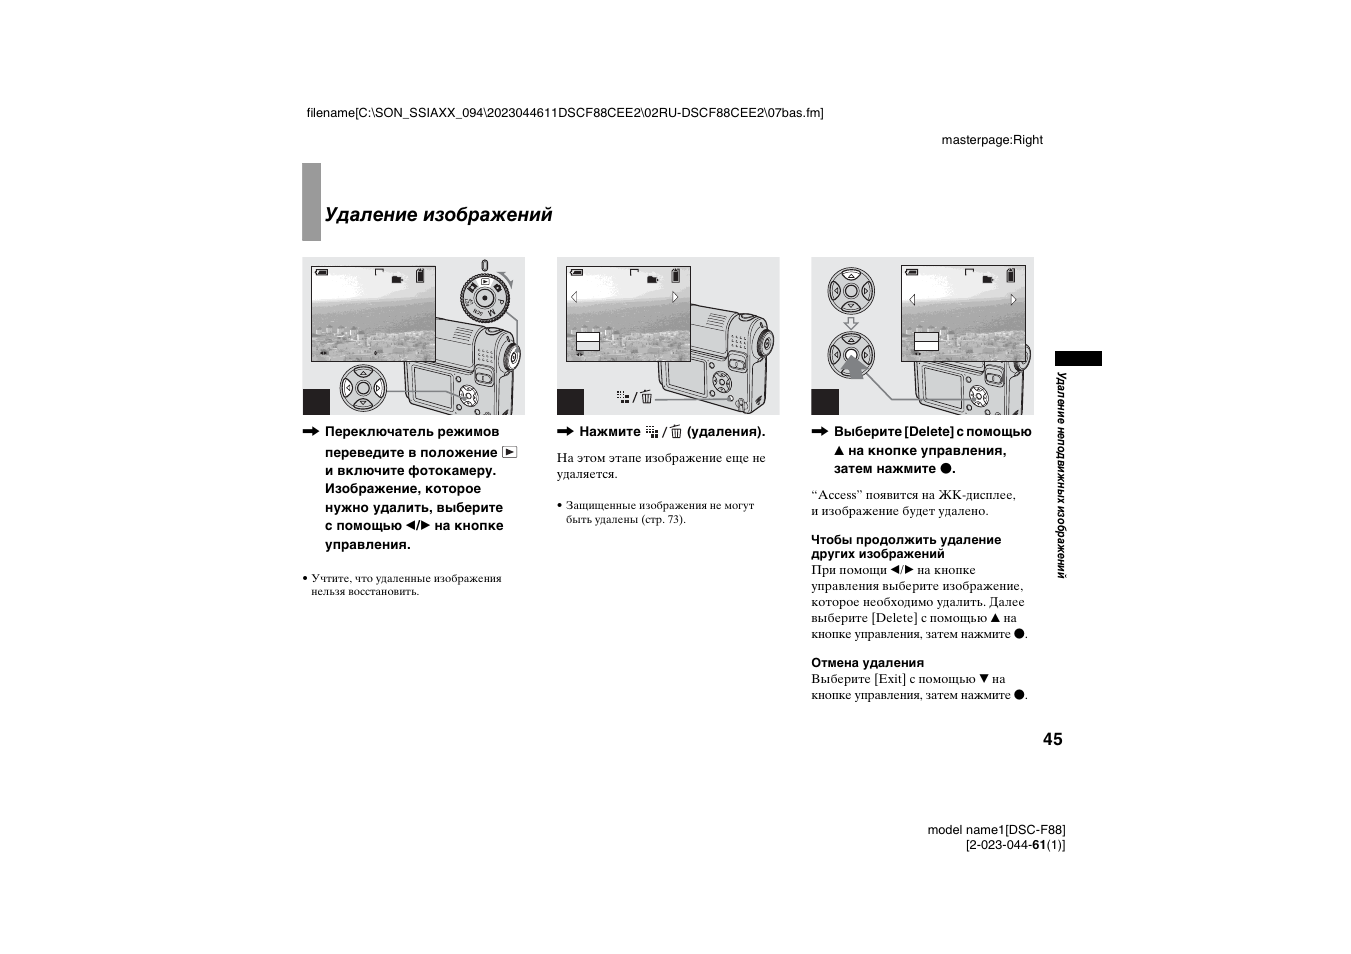 Удаление неподвижных изображений, Удаление изображений, Удаление с помощью индексного экрана | Инструкция по эксплуатации Sony DSC-F88 | Страница 45 / 268